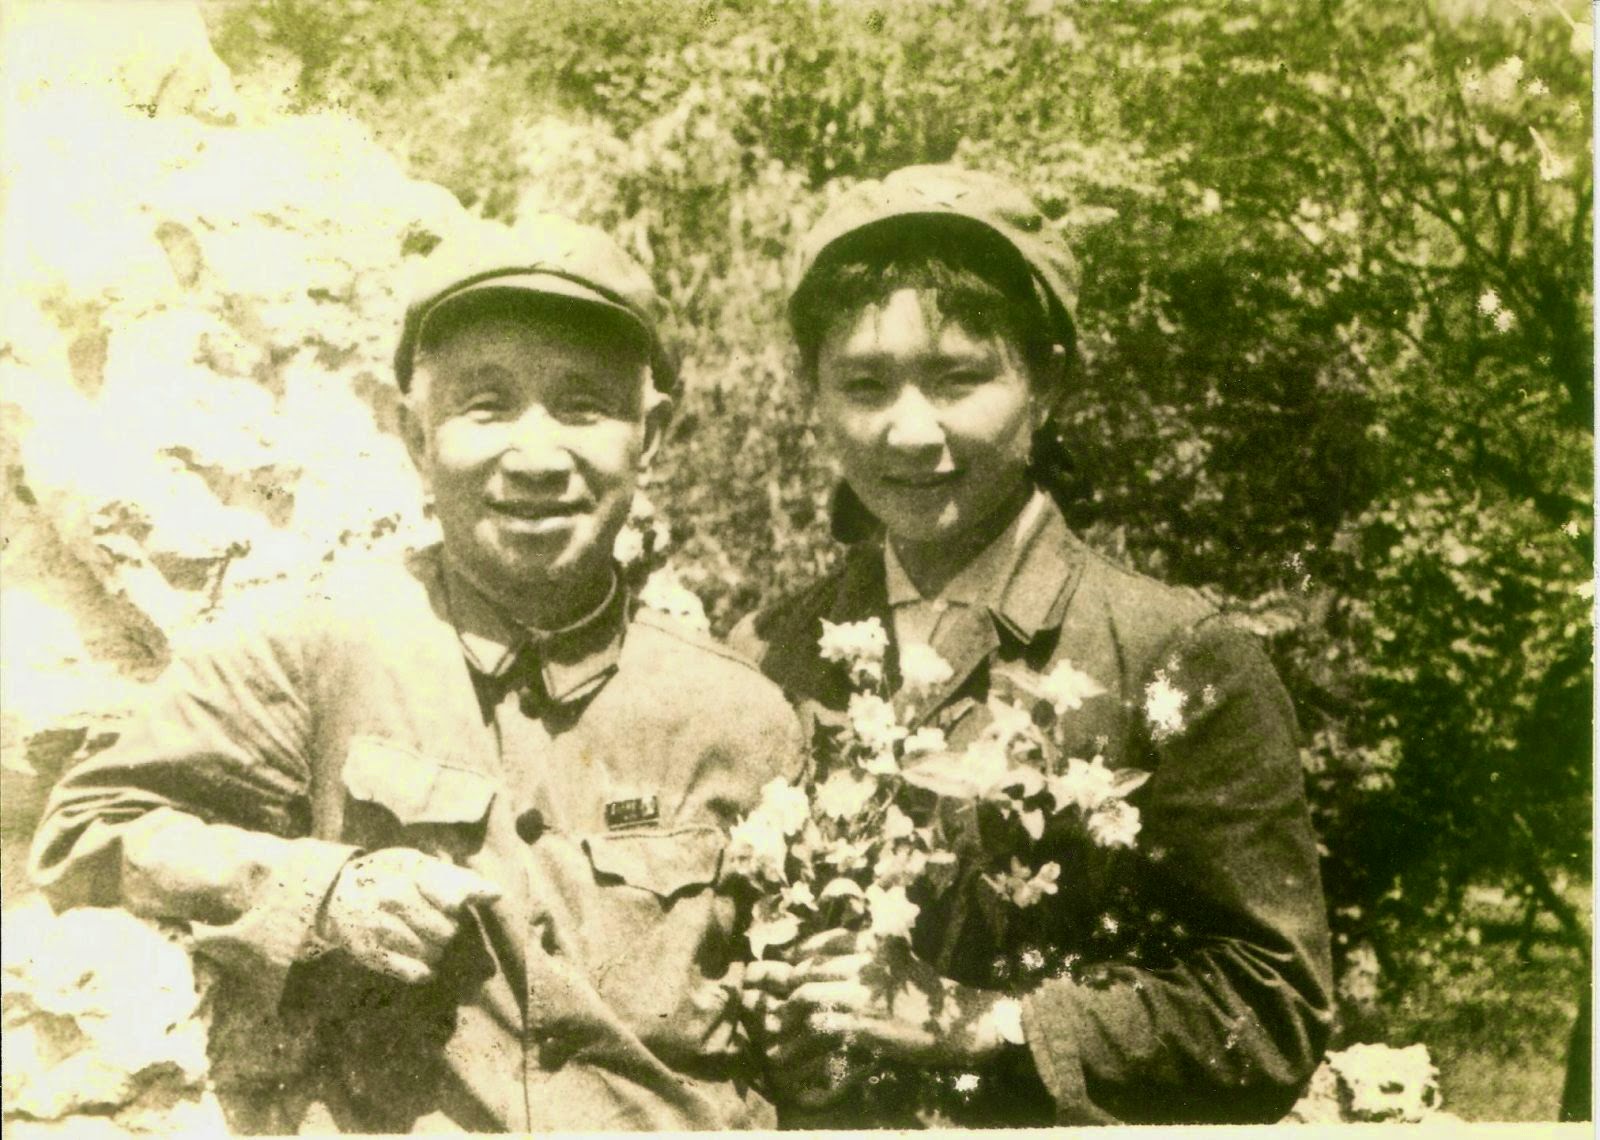 陈惠敏（右）与粟裕大将摄于文革后期。粟裕曾是陈父军中上级。